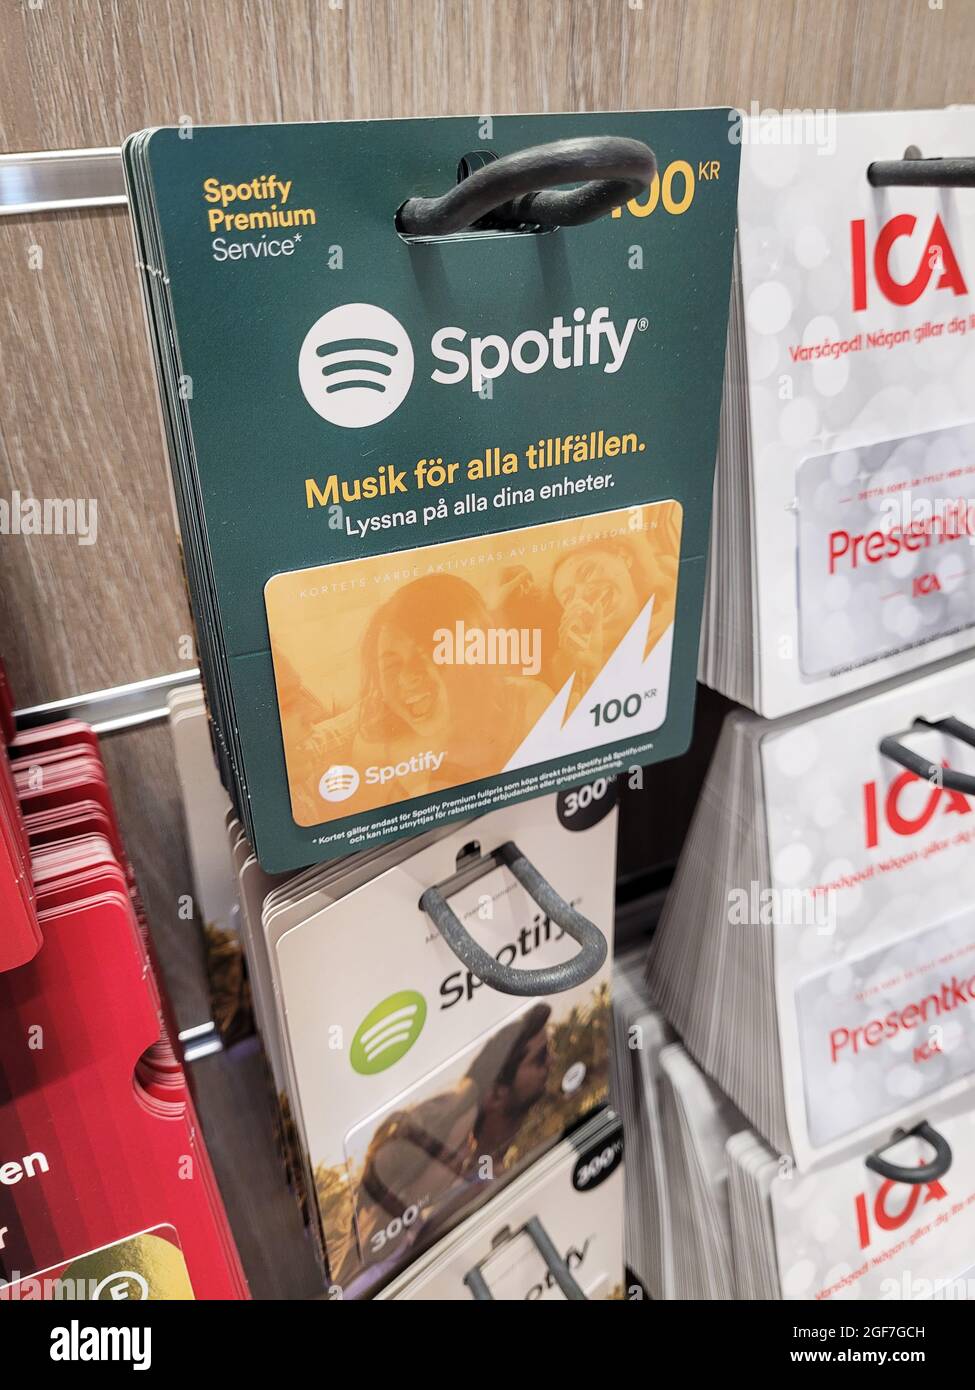 Spotify carte cadeau Banque de photographies et d'images à haute résolution  - Alamy